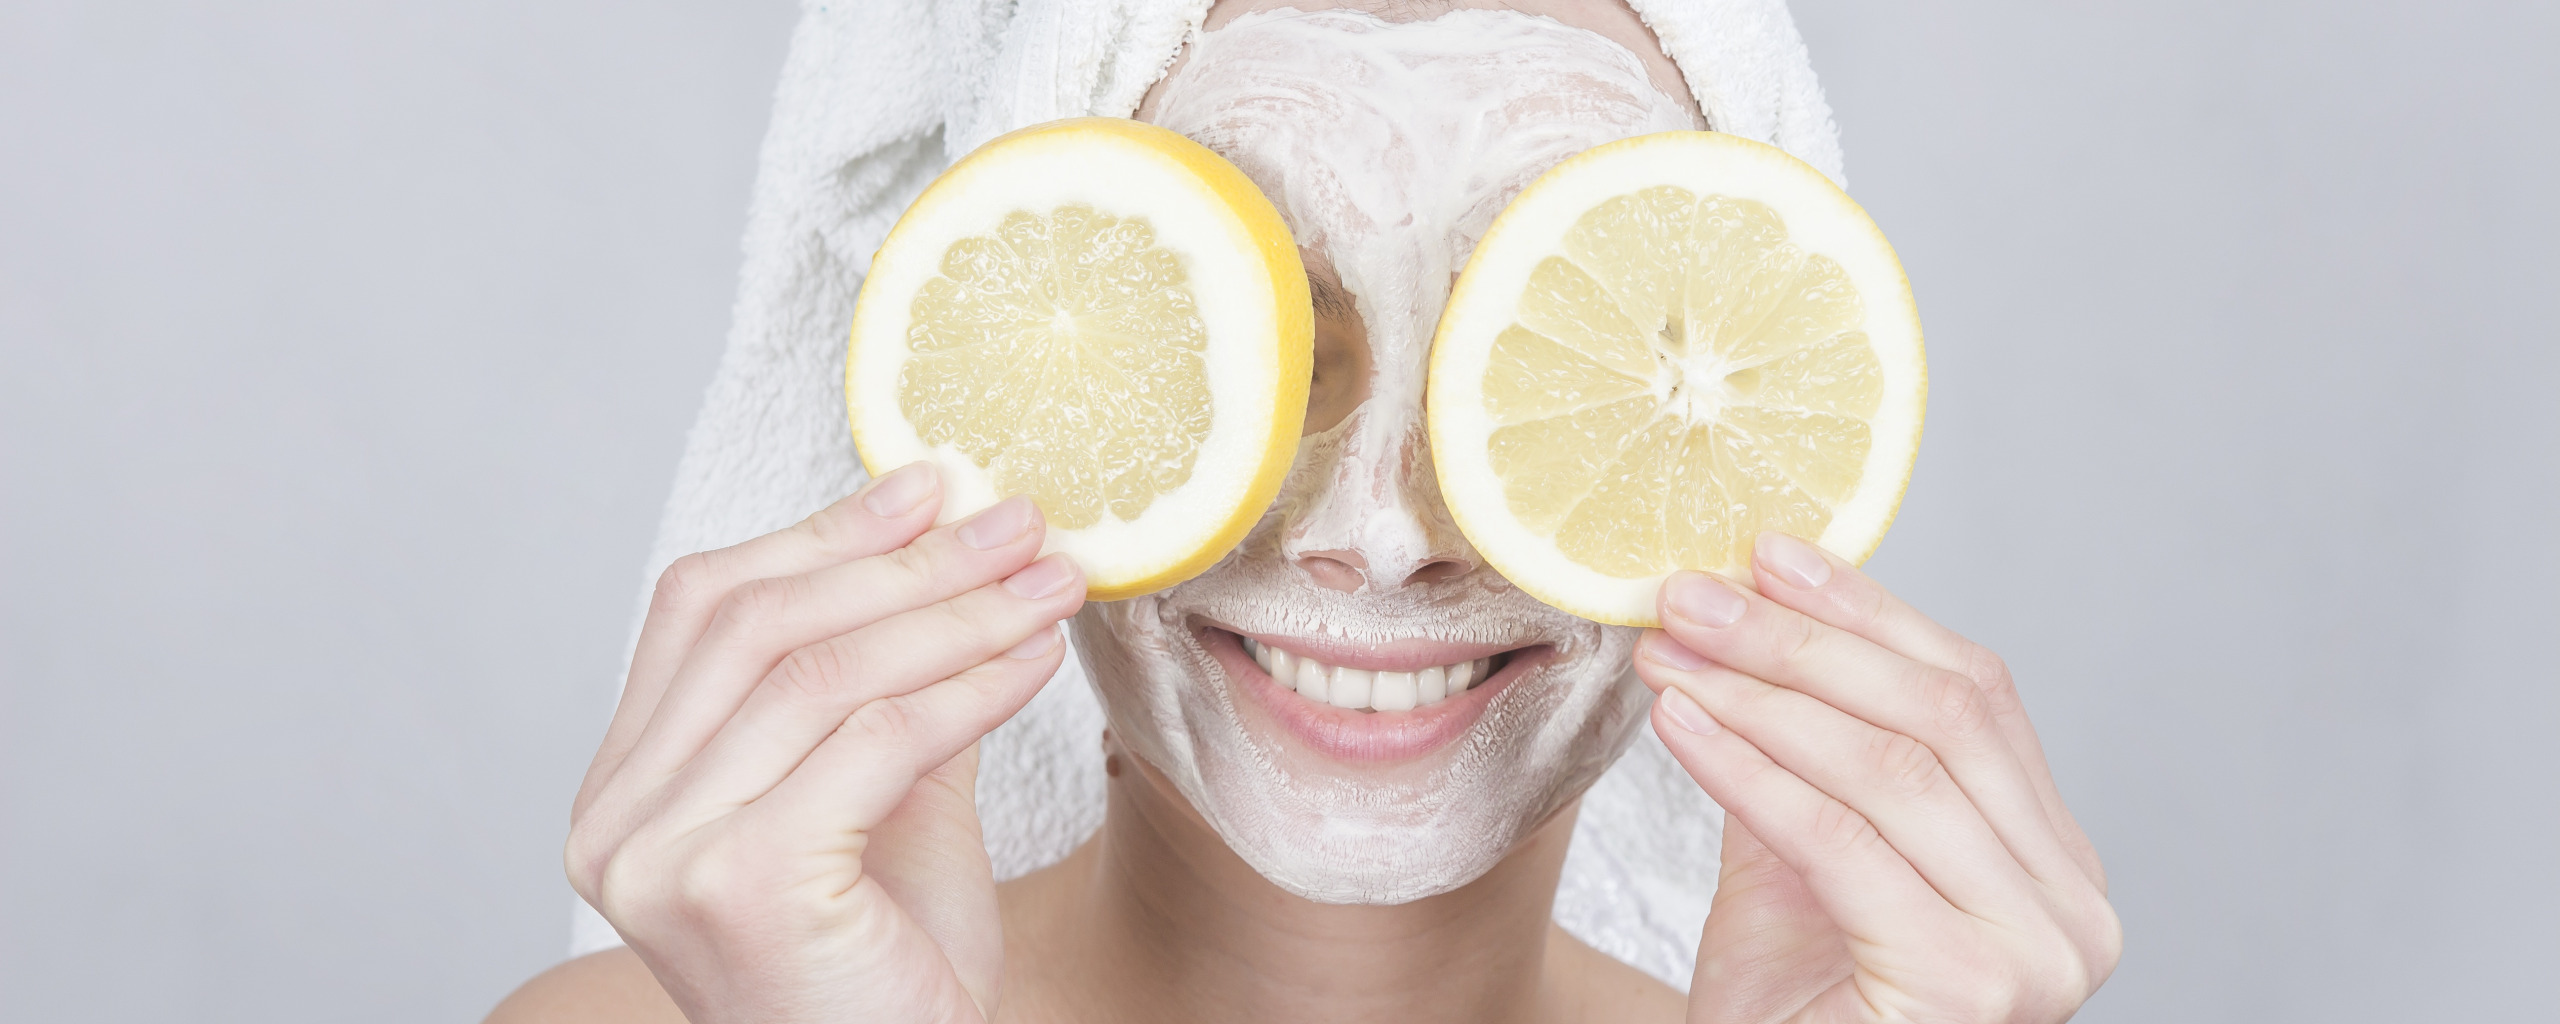 Маска с лимоном в домашних условиях. Лимонная маска для лица. Лимон с лицом. Лимон для красоты. Маска очищение натуральная.